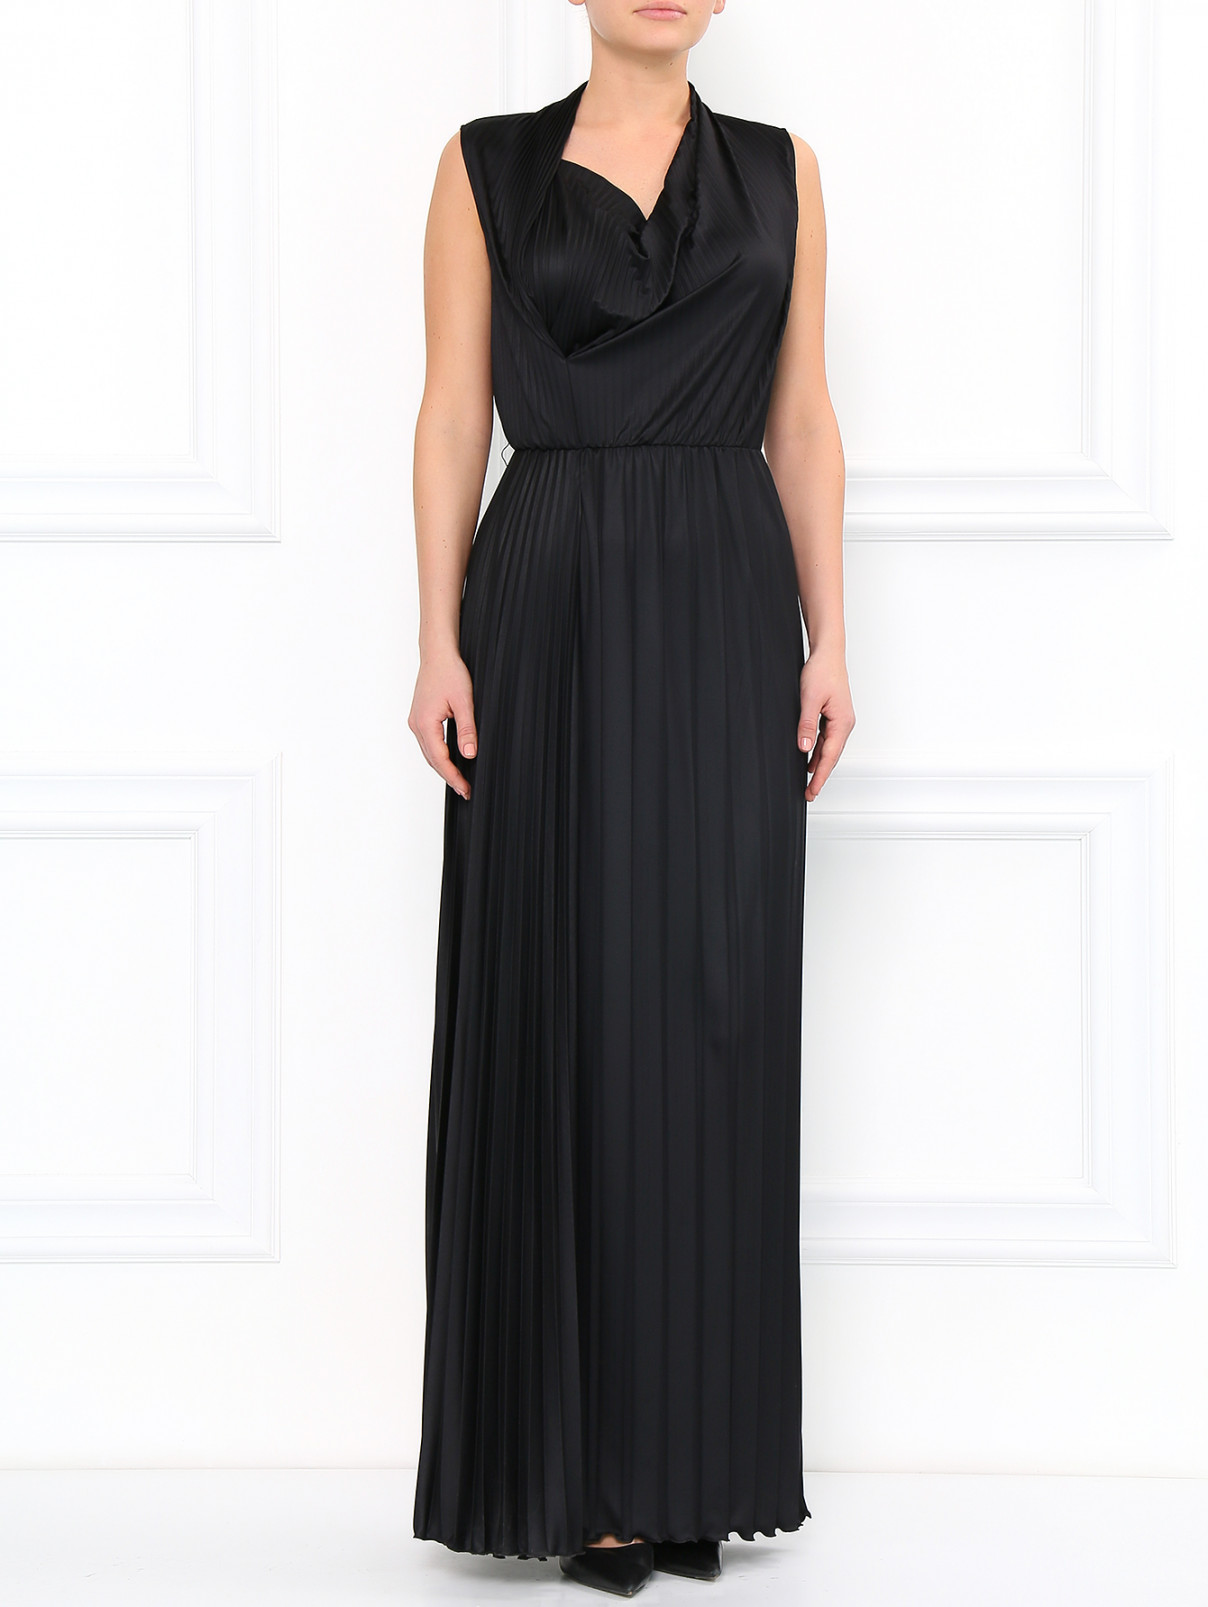 Платье-макси с плиссировкой Moschino Cheap&Chic  –  Модель Общий вид  – Цвет:  Черный